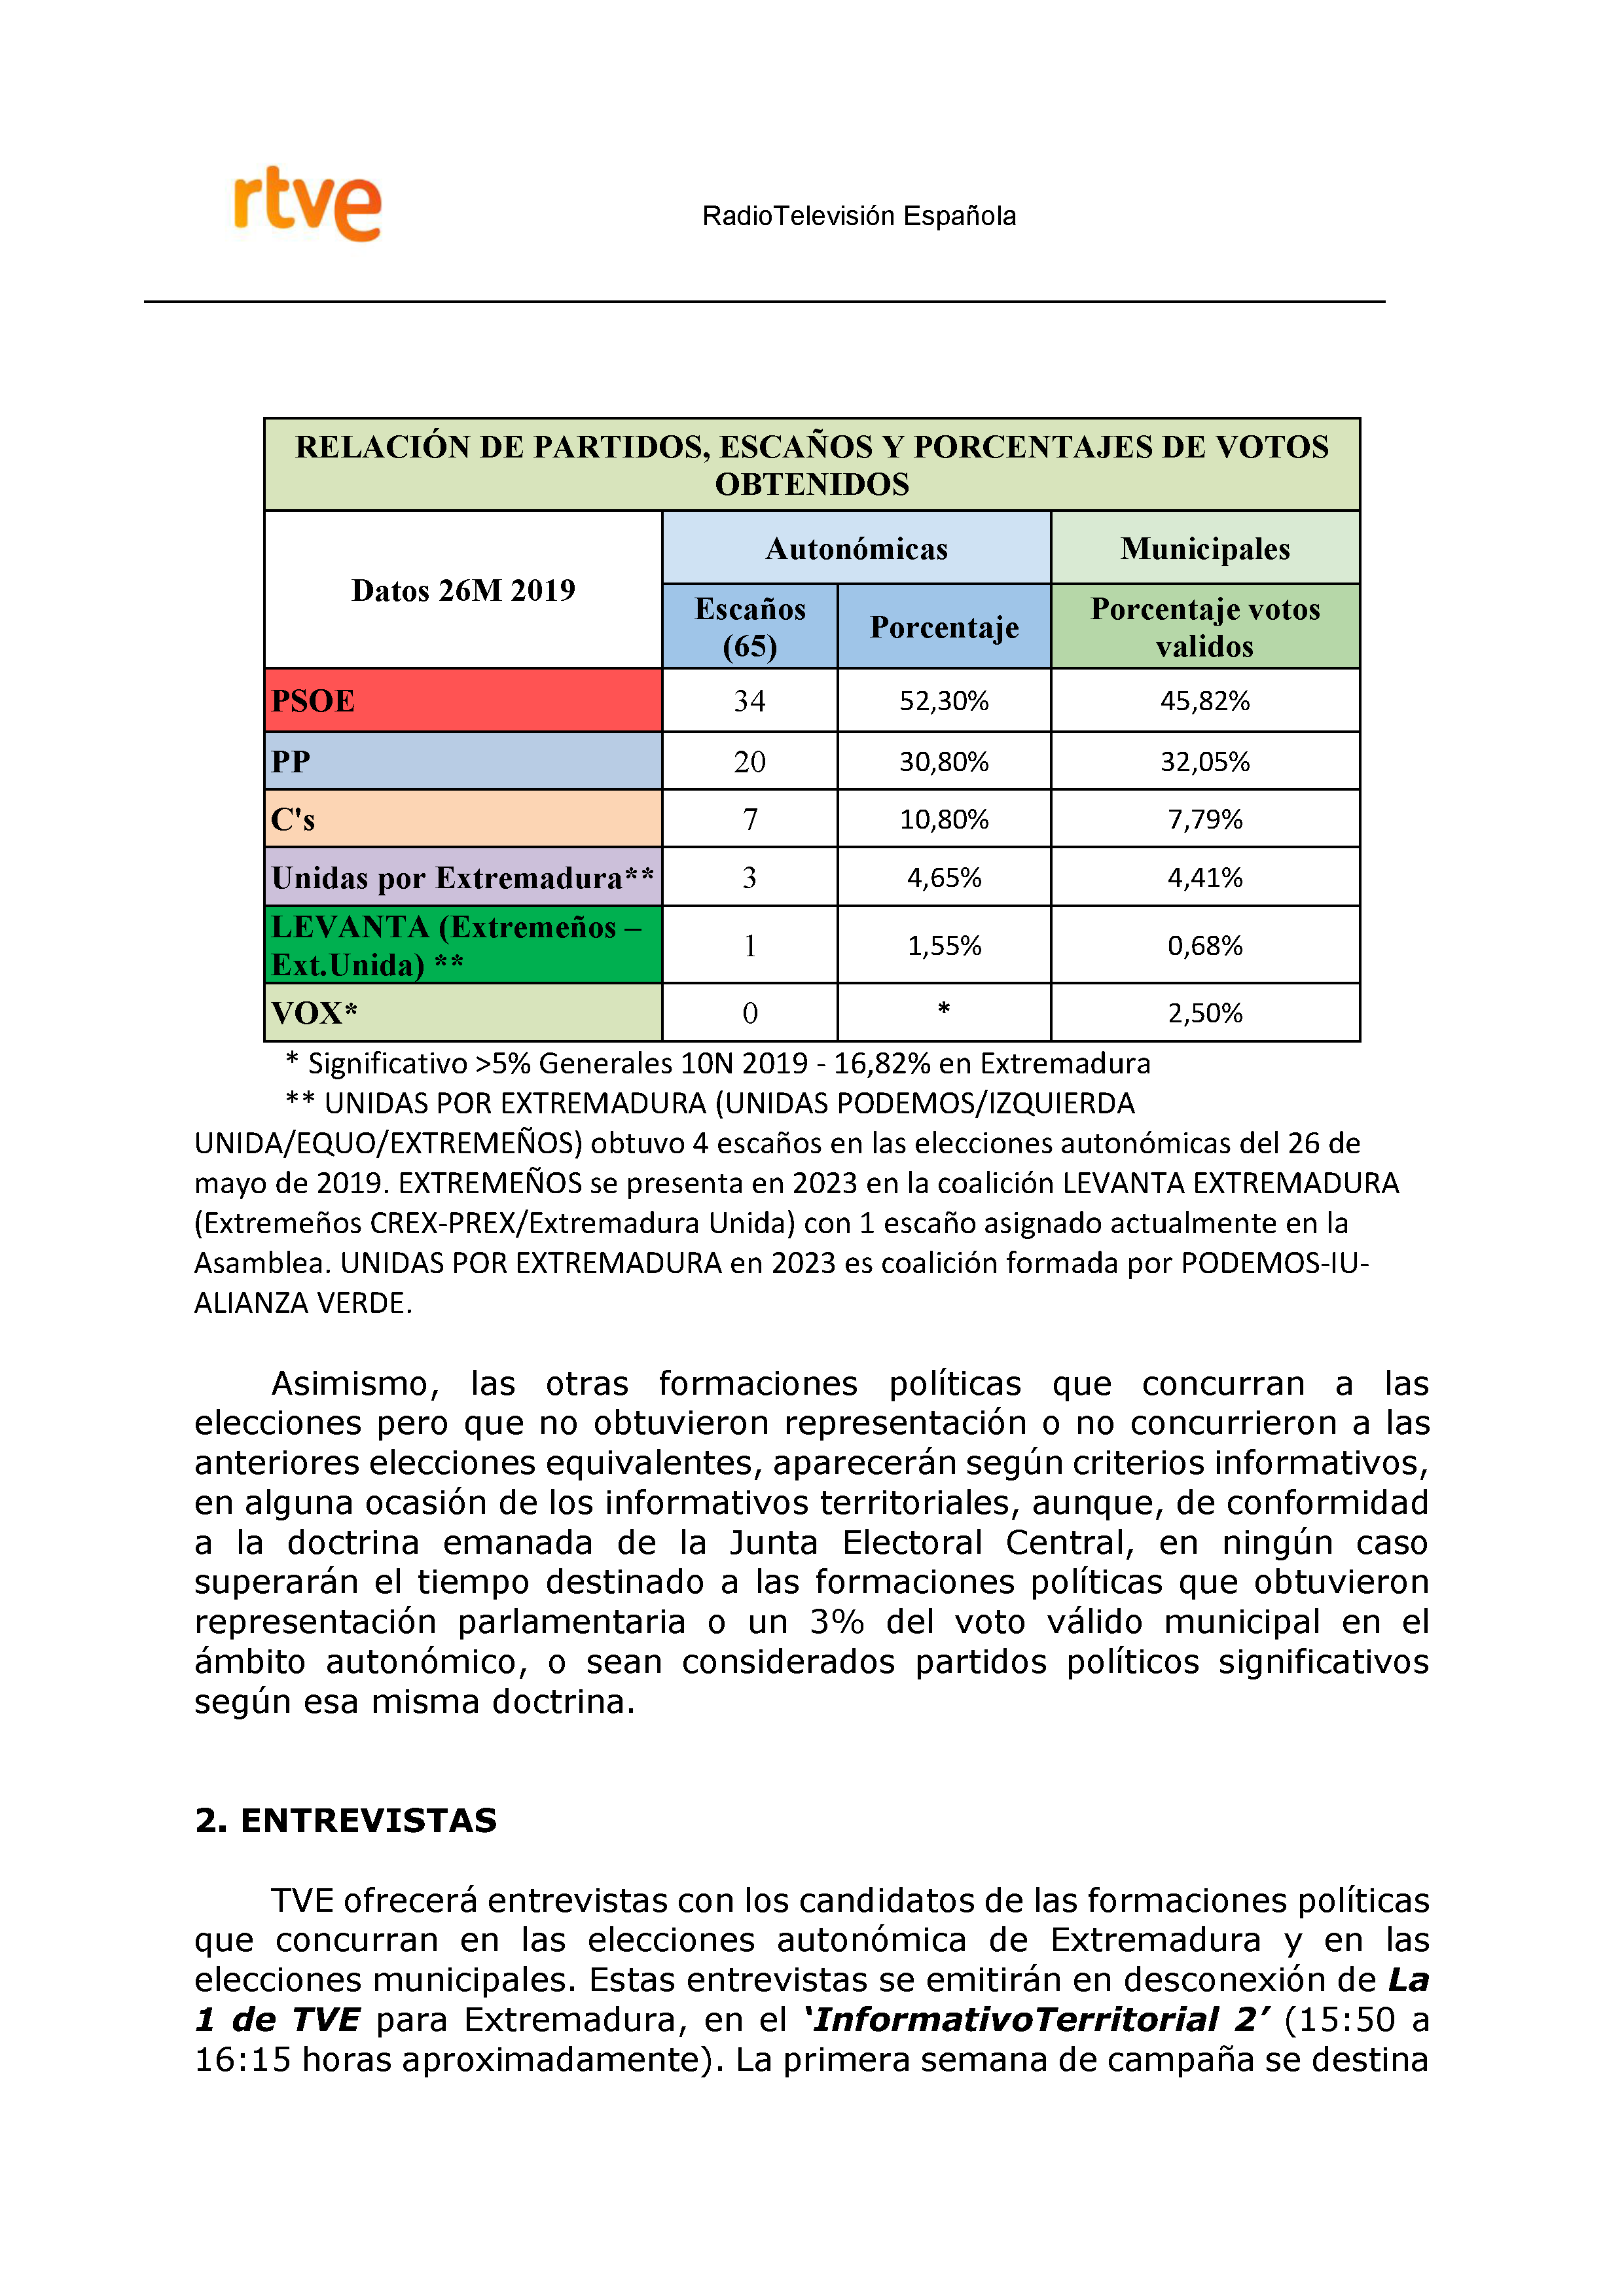 PLAN DE COBERTURA INFORMATIVA RTVE en Extremadura ELECCIONES MUNICIPALES Y AUTONÓMICAS Pag 6